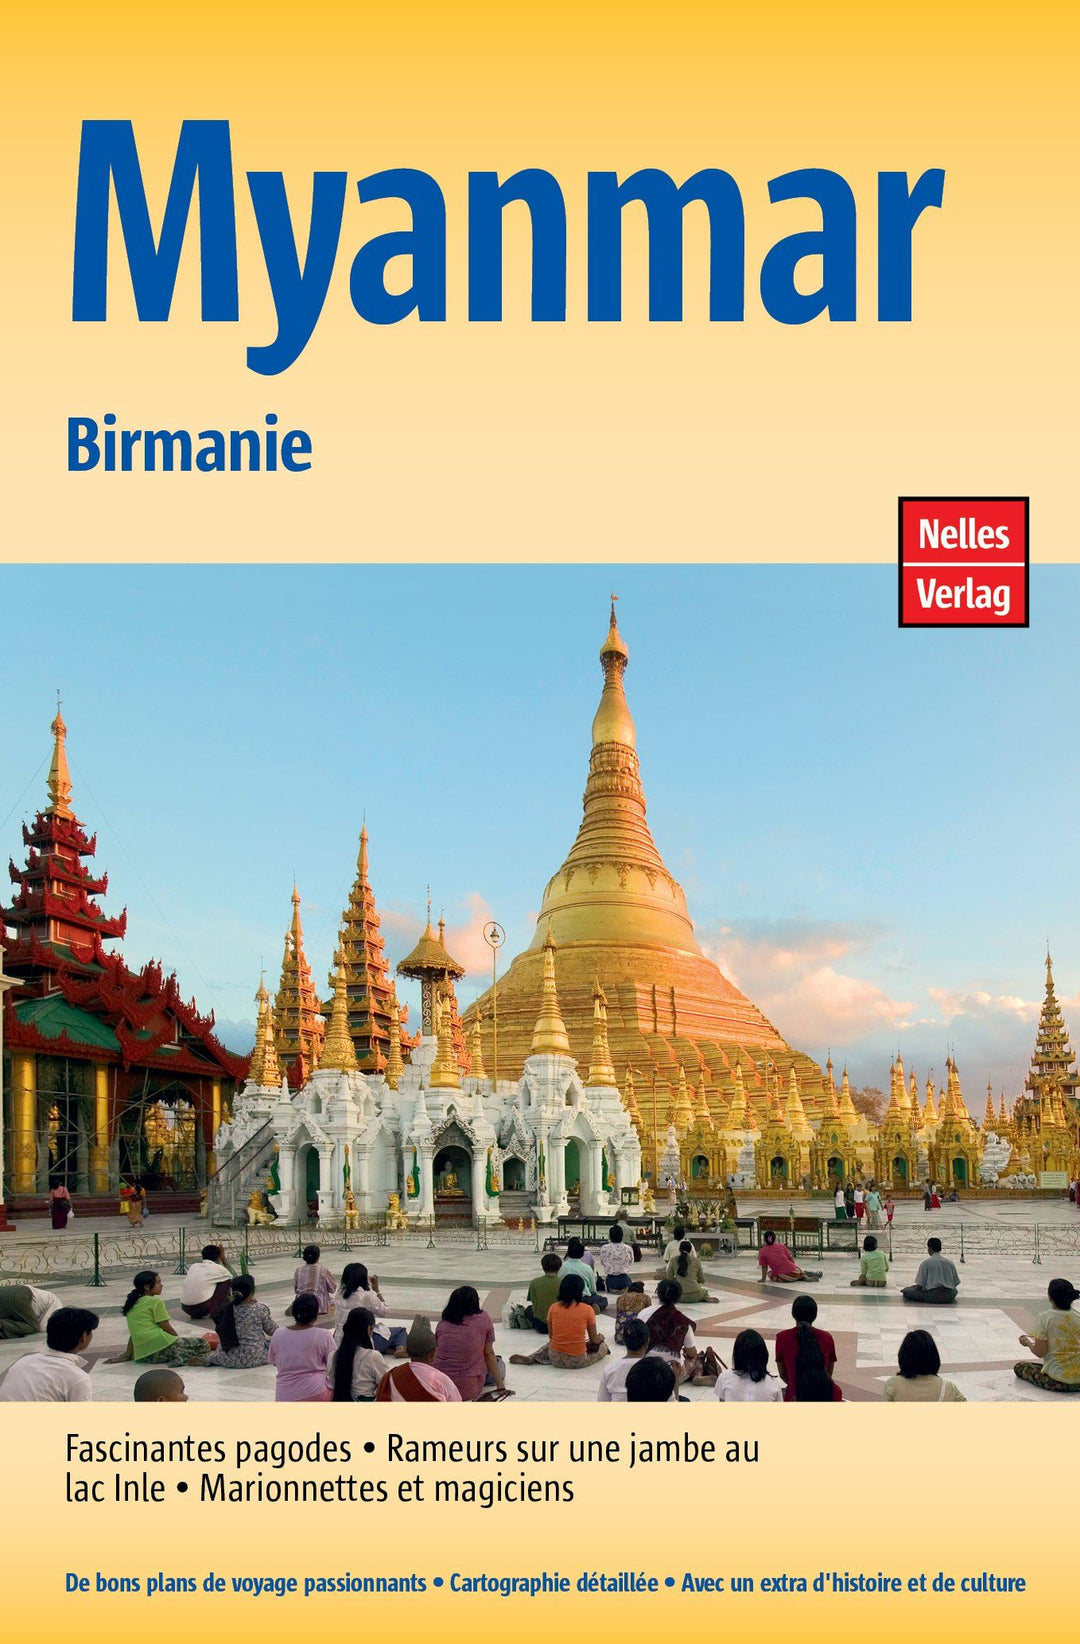 Guide de voyage - Myanmar, Birmanie | Nelles Guide guide de voyage Nelles Guide 